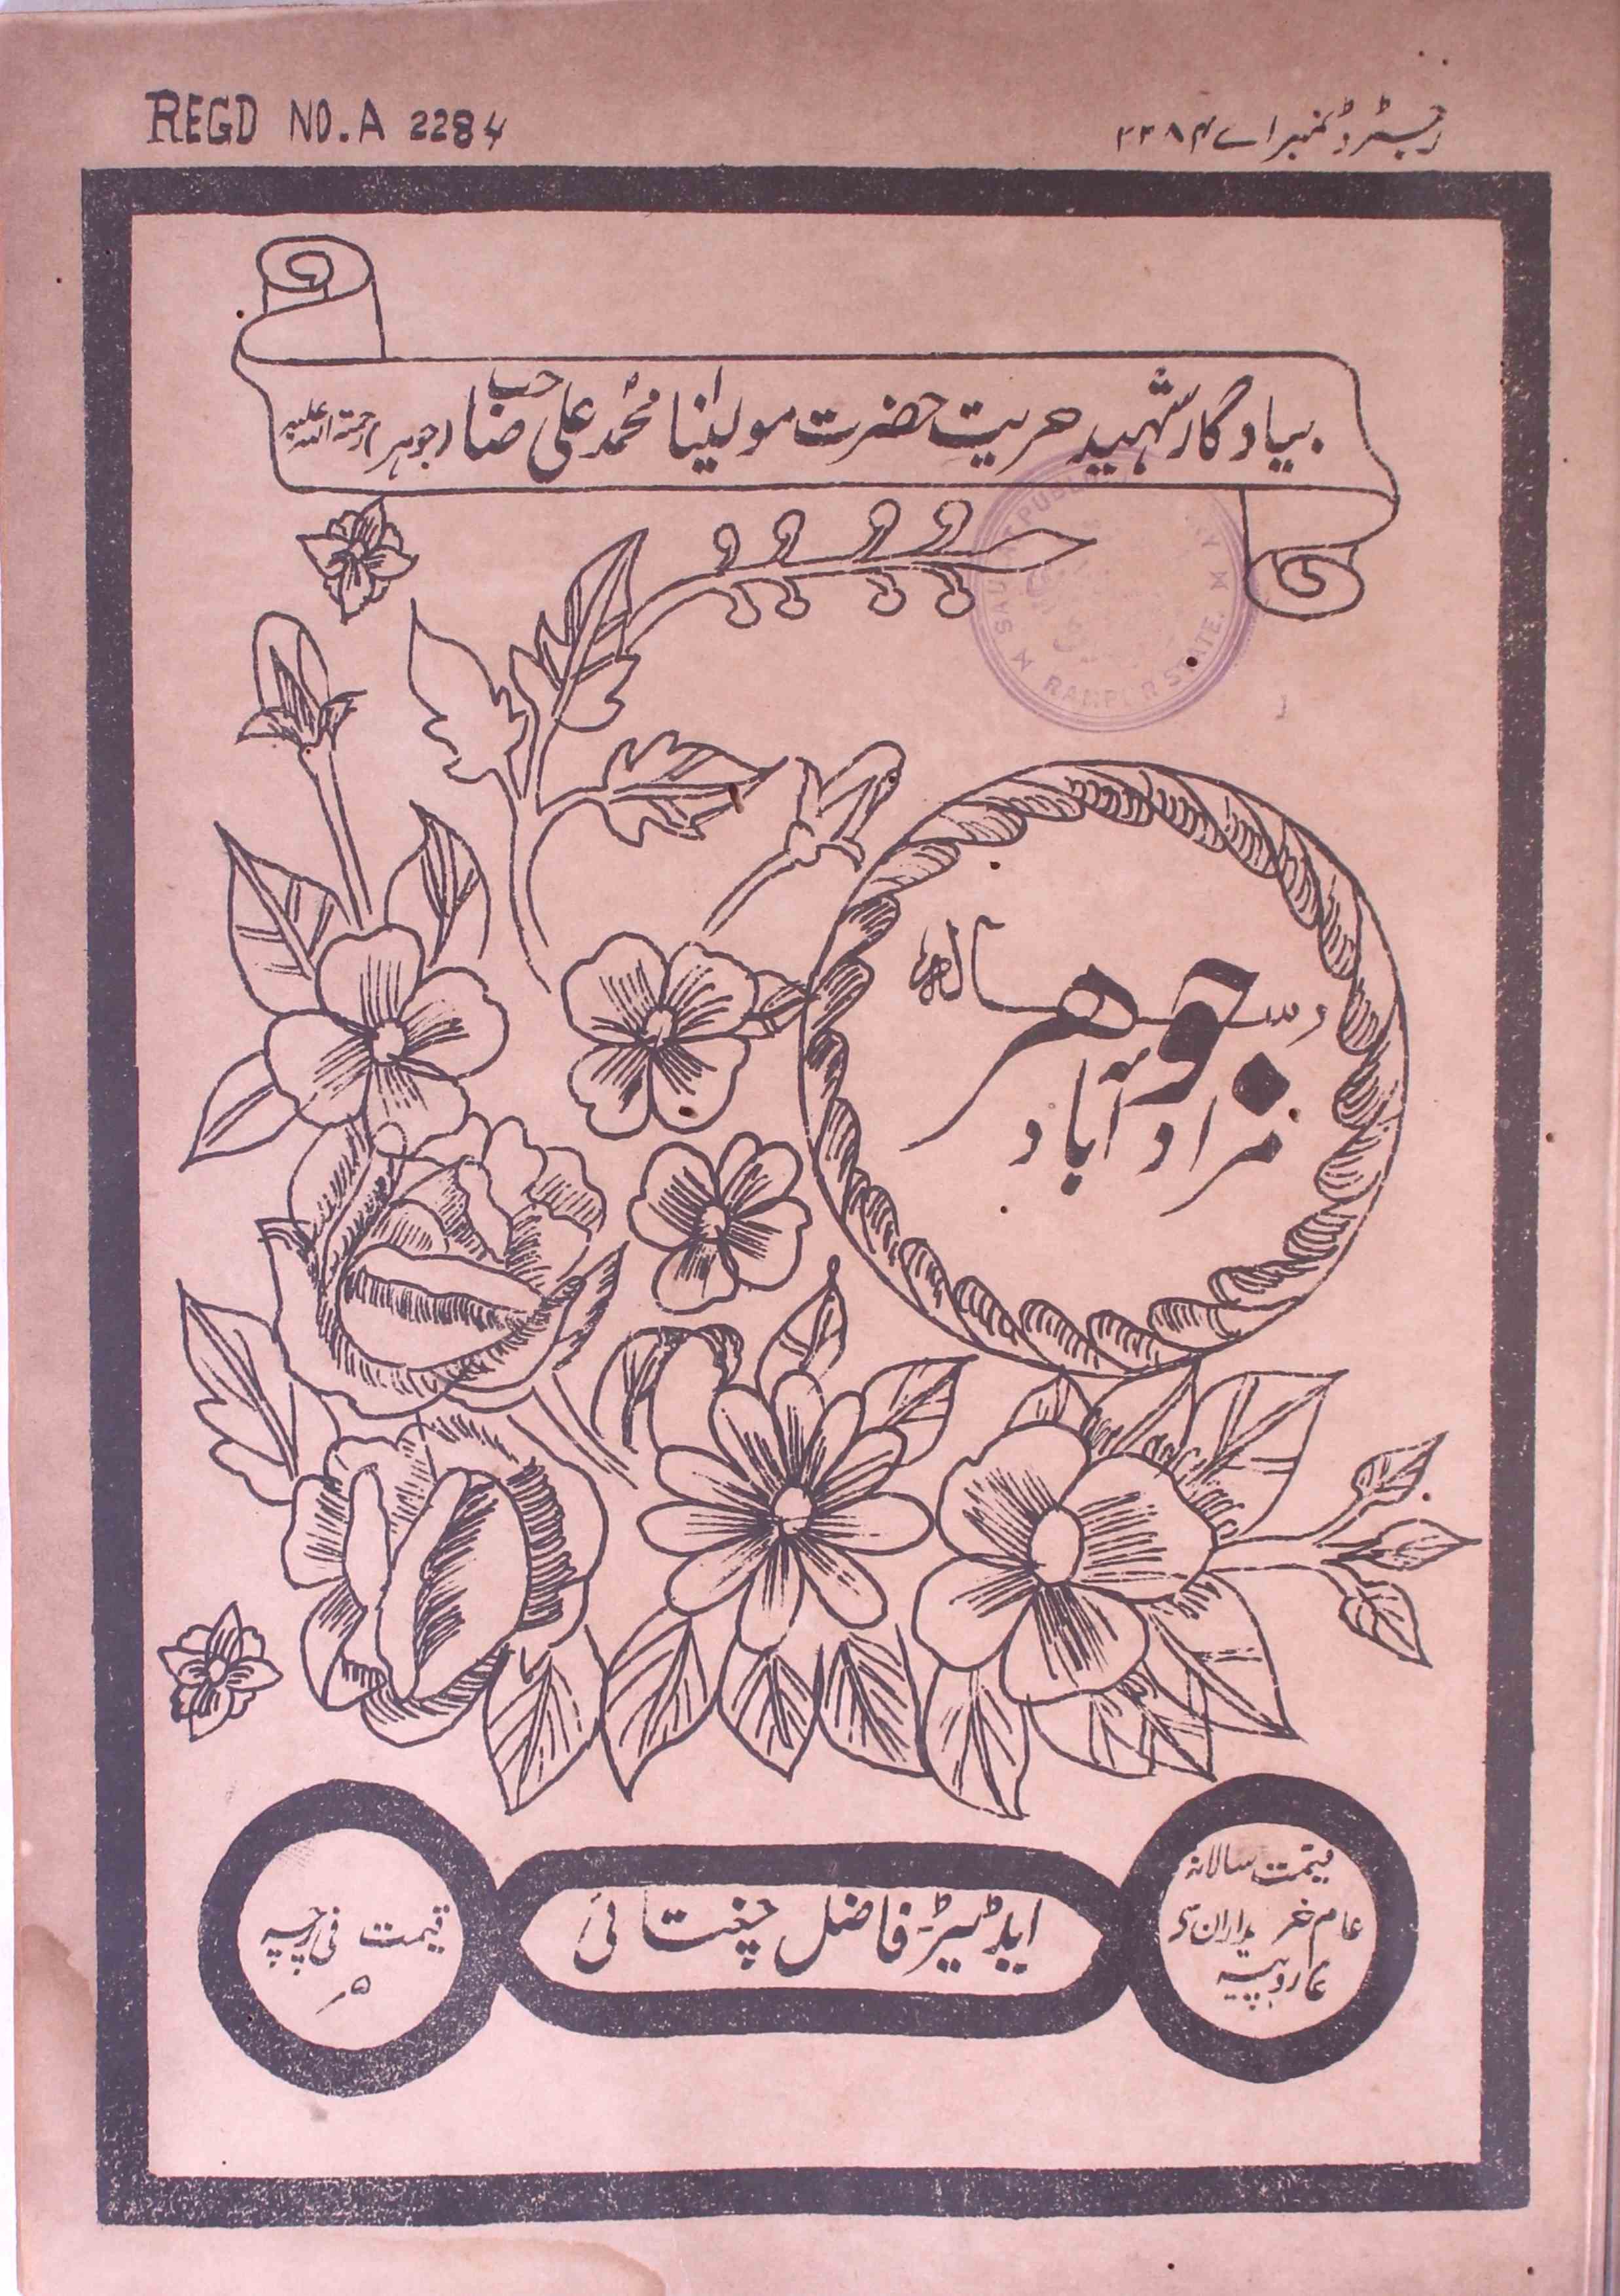 Jauhar Jild 1 No. 6 - March 1933